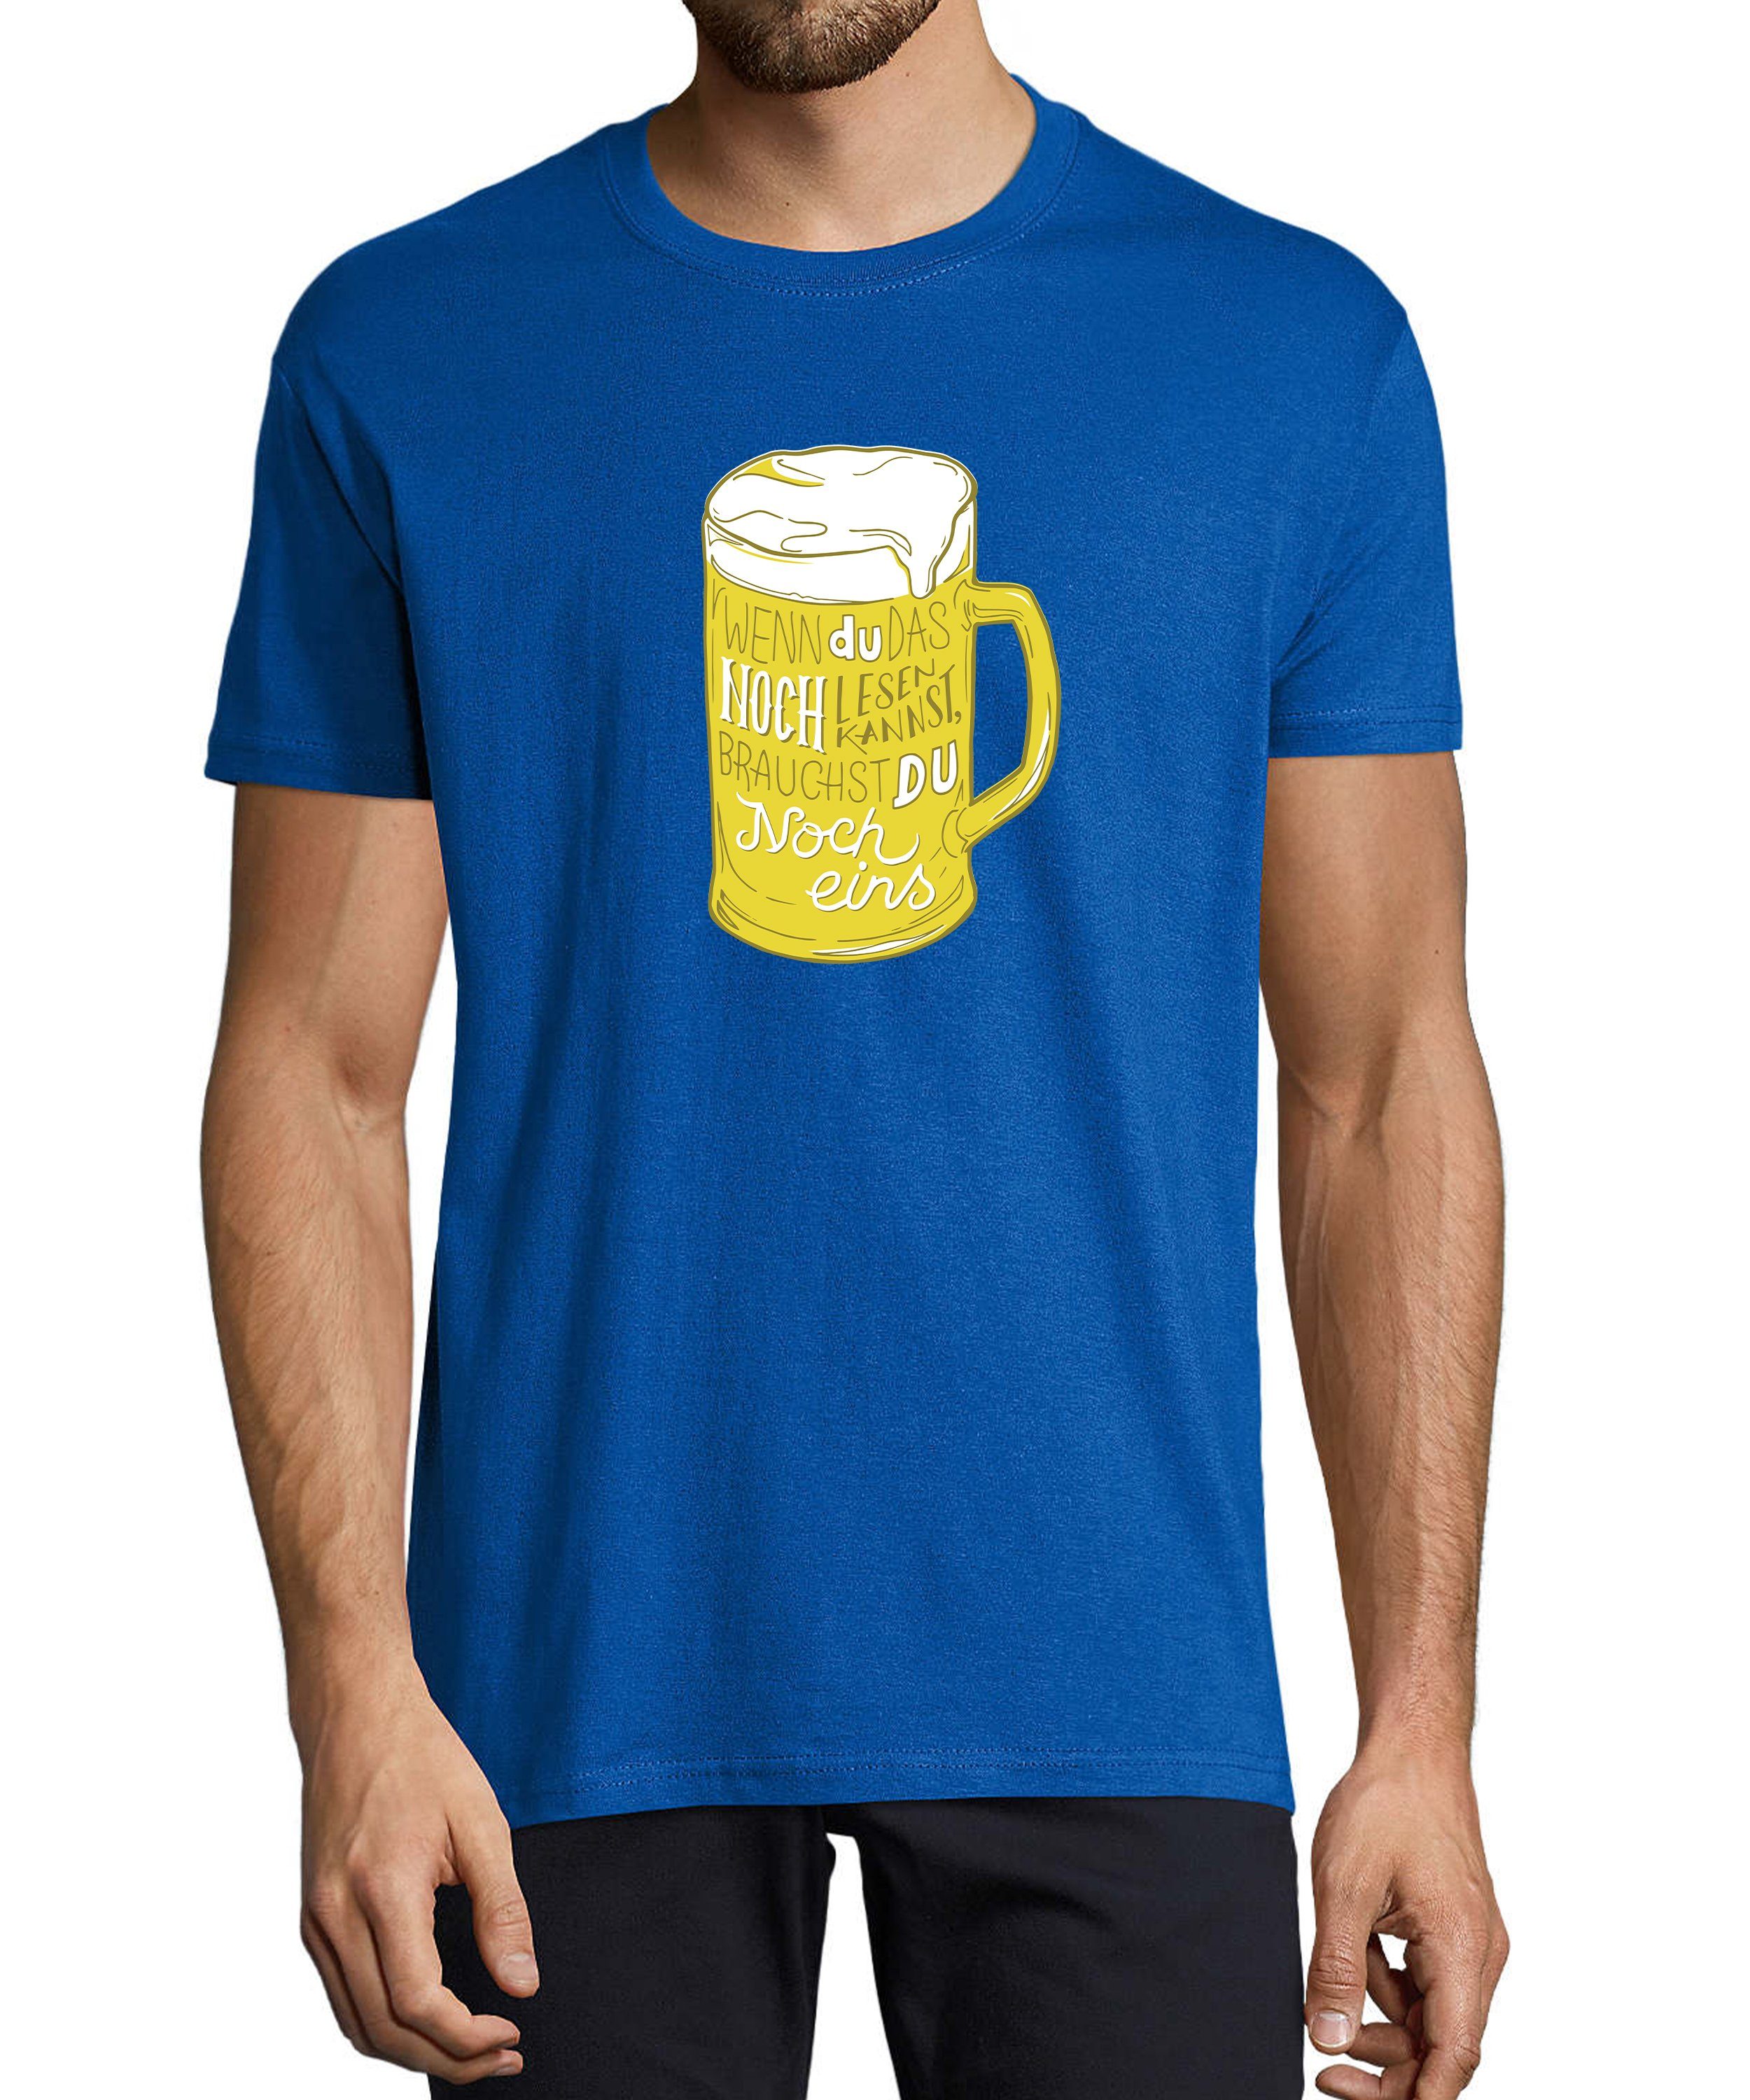 MyDesign24 T-Shirt Herren Fun Print Shirt - Oktoberfest Trinkshirt mit witzigem Spruch Baumwollshirt mit Aufdruck Regular Fit, i310 royal blau